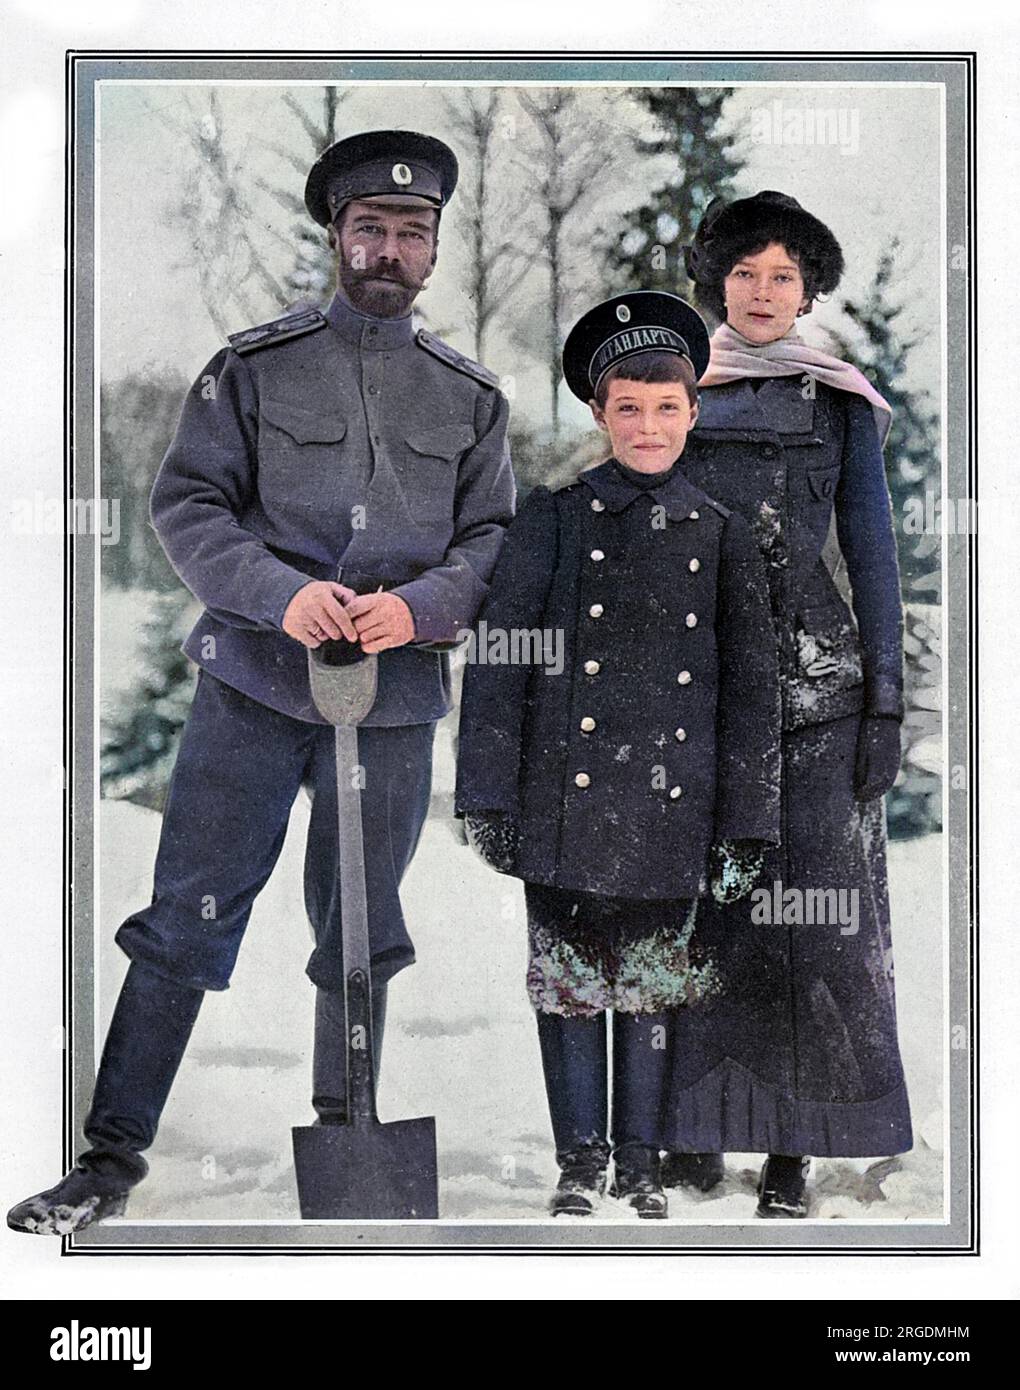 Le tsar Nicolas II de Russie photographié avec deux de ses enfants, la Grande-Duchesse Tatiana et Alexeï, le tsarevitch, construisant une fortification de neige dans le parc du Palais impérial à Tsarskoïe Selo, à Pétrograd. Banque D'Images